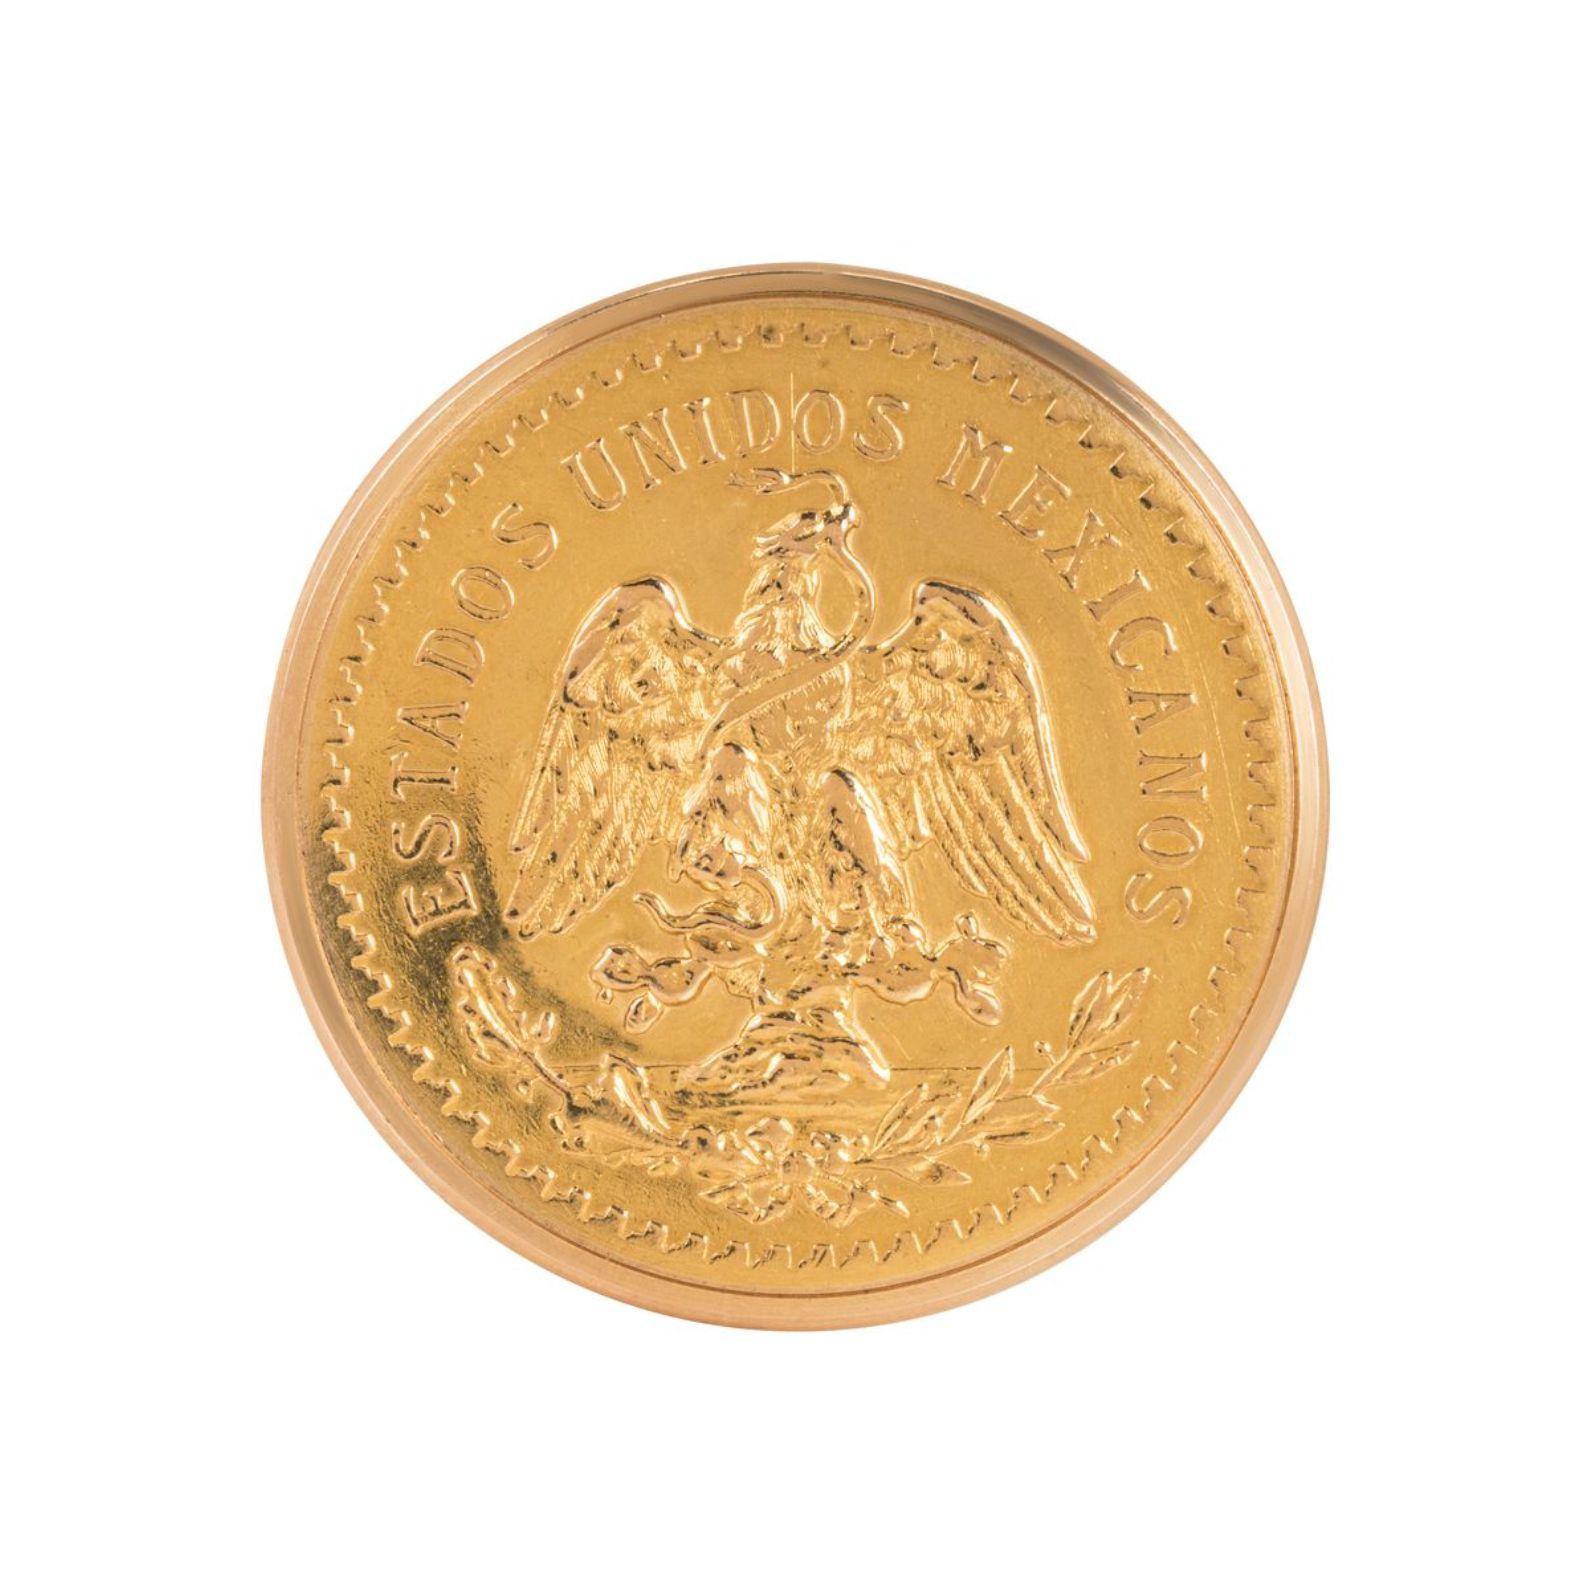 Piaget. Rare et importante montre numismatique mexicaine en or de 50 pesos à remontage manuel C1960

Cadran : Le cadran en argent mat signé Piaget avec des bâtons de repérage noirs et des aiguilles en acier bleui assorties.

Boîtier : le boîtier est